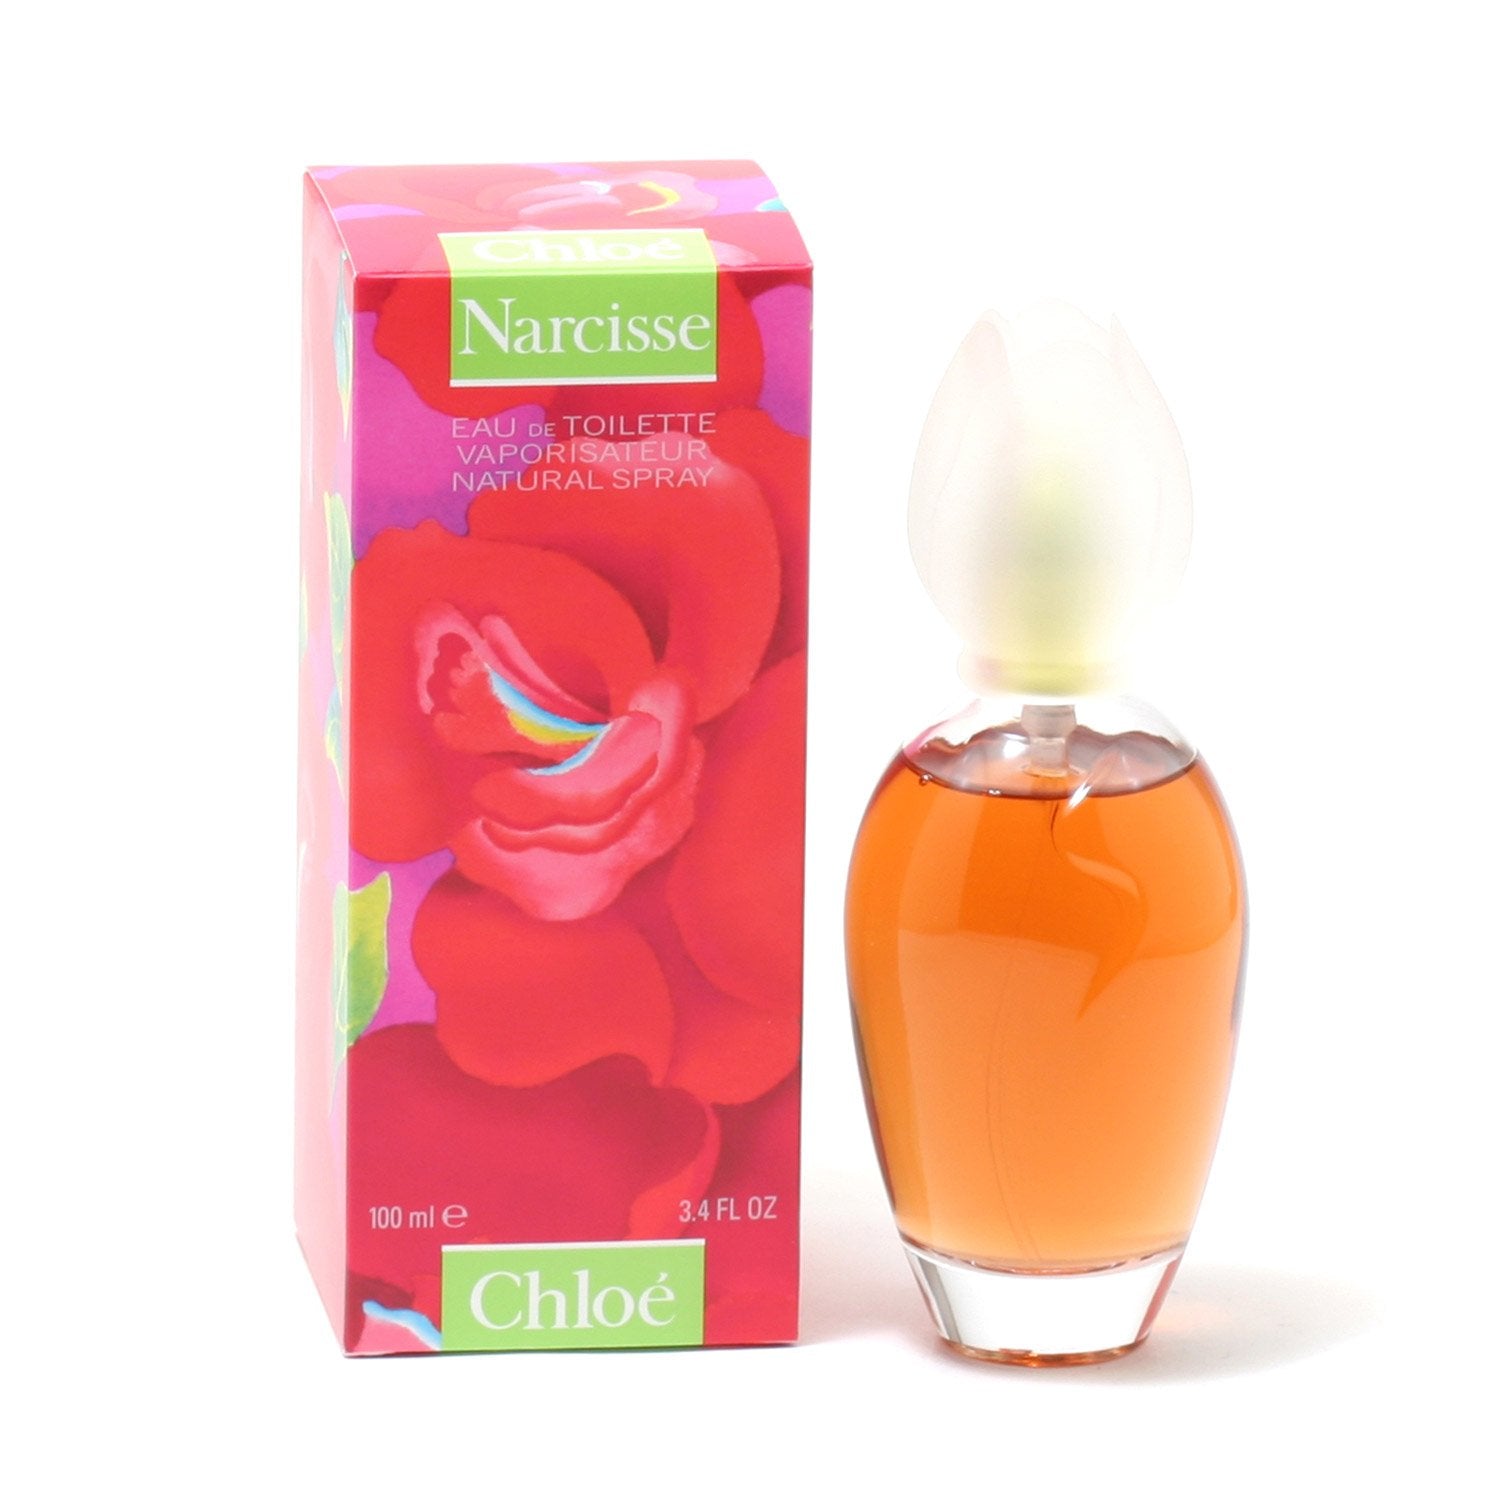 Perfume - CHLOE NARCISSE FOR WOMEN BY LAGERFELD - EAU DE TOILETTE SPRAY, 3.4 OZ